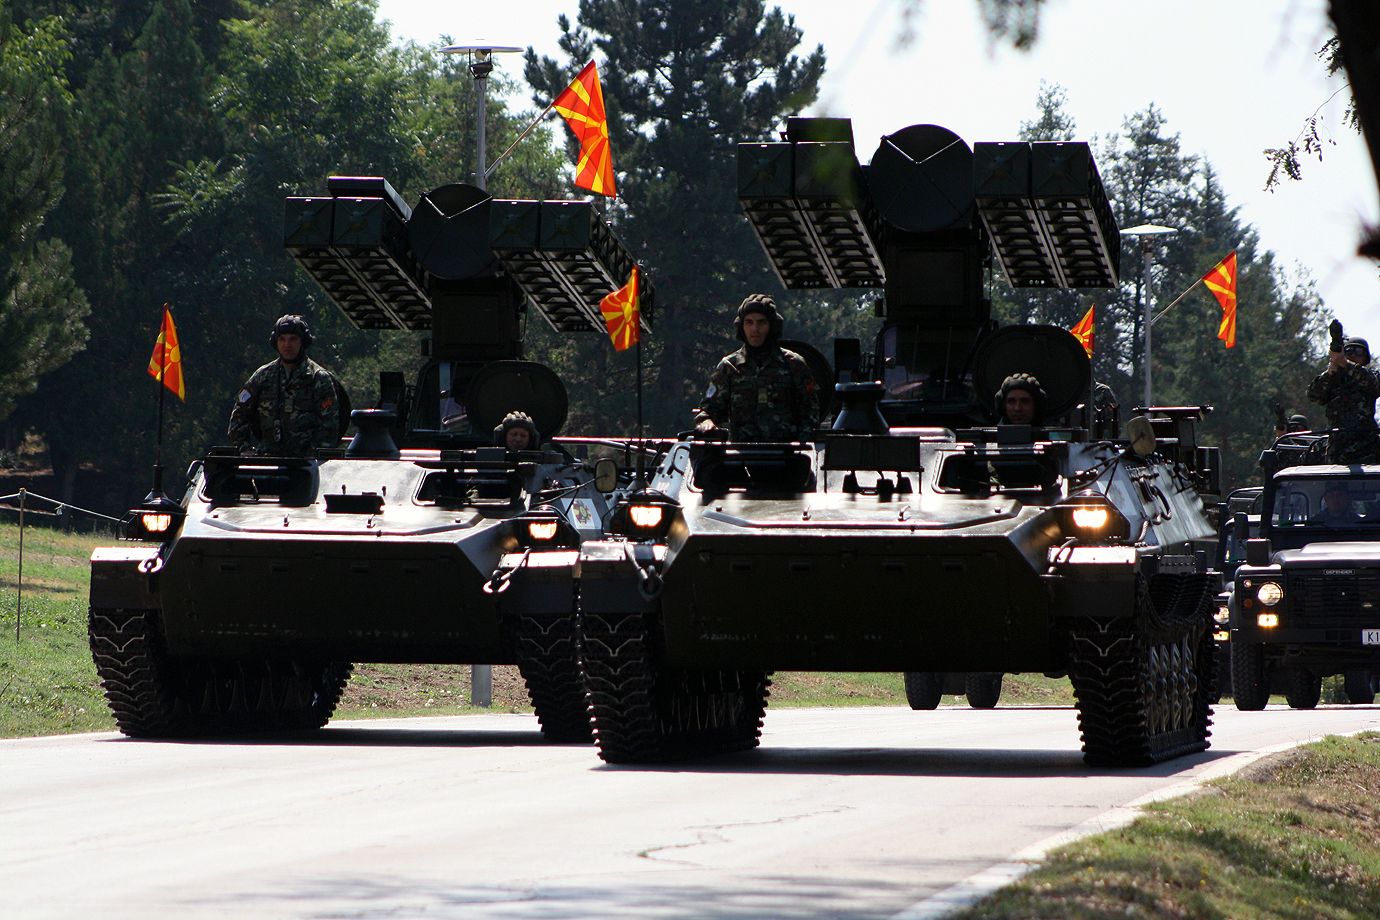 Σκόπια: Ποια η ισχύς των Ενόπλων Δυνάμεων της γείτονος χώρας; – Μπορεί να προκαλέσει «εκπλήξεις»; (βίντεο)